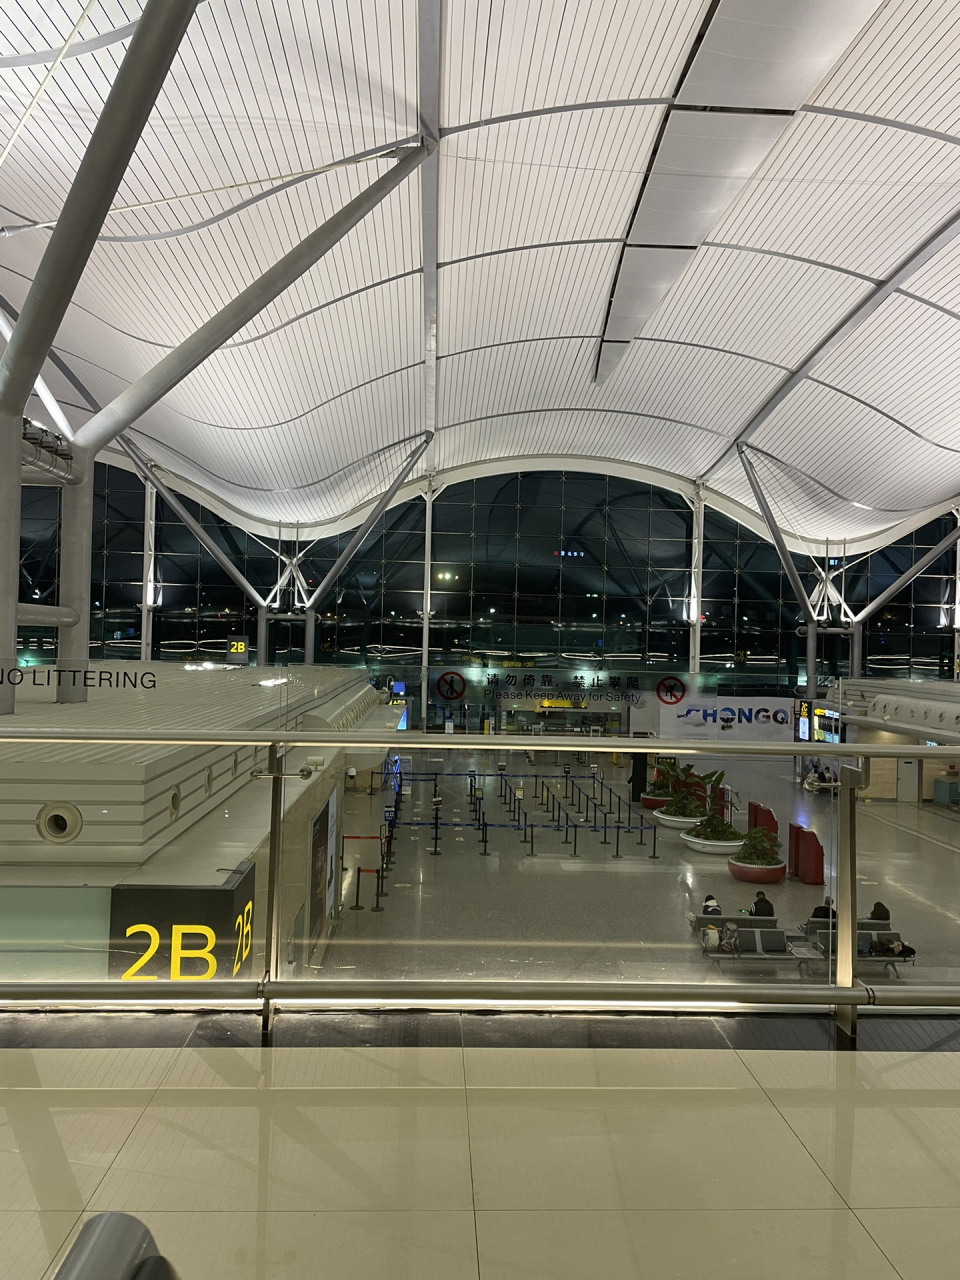 重庆江北机场t2航站楼过夜初体验 买了早上6点的飞机,宿舍凌晨也不